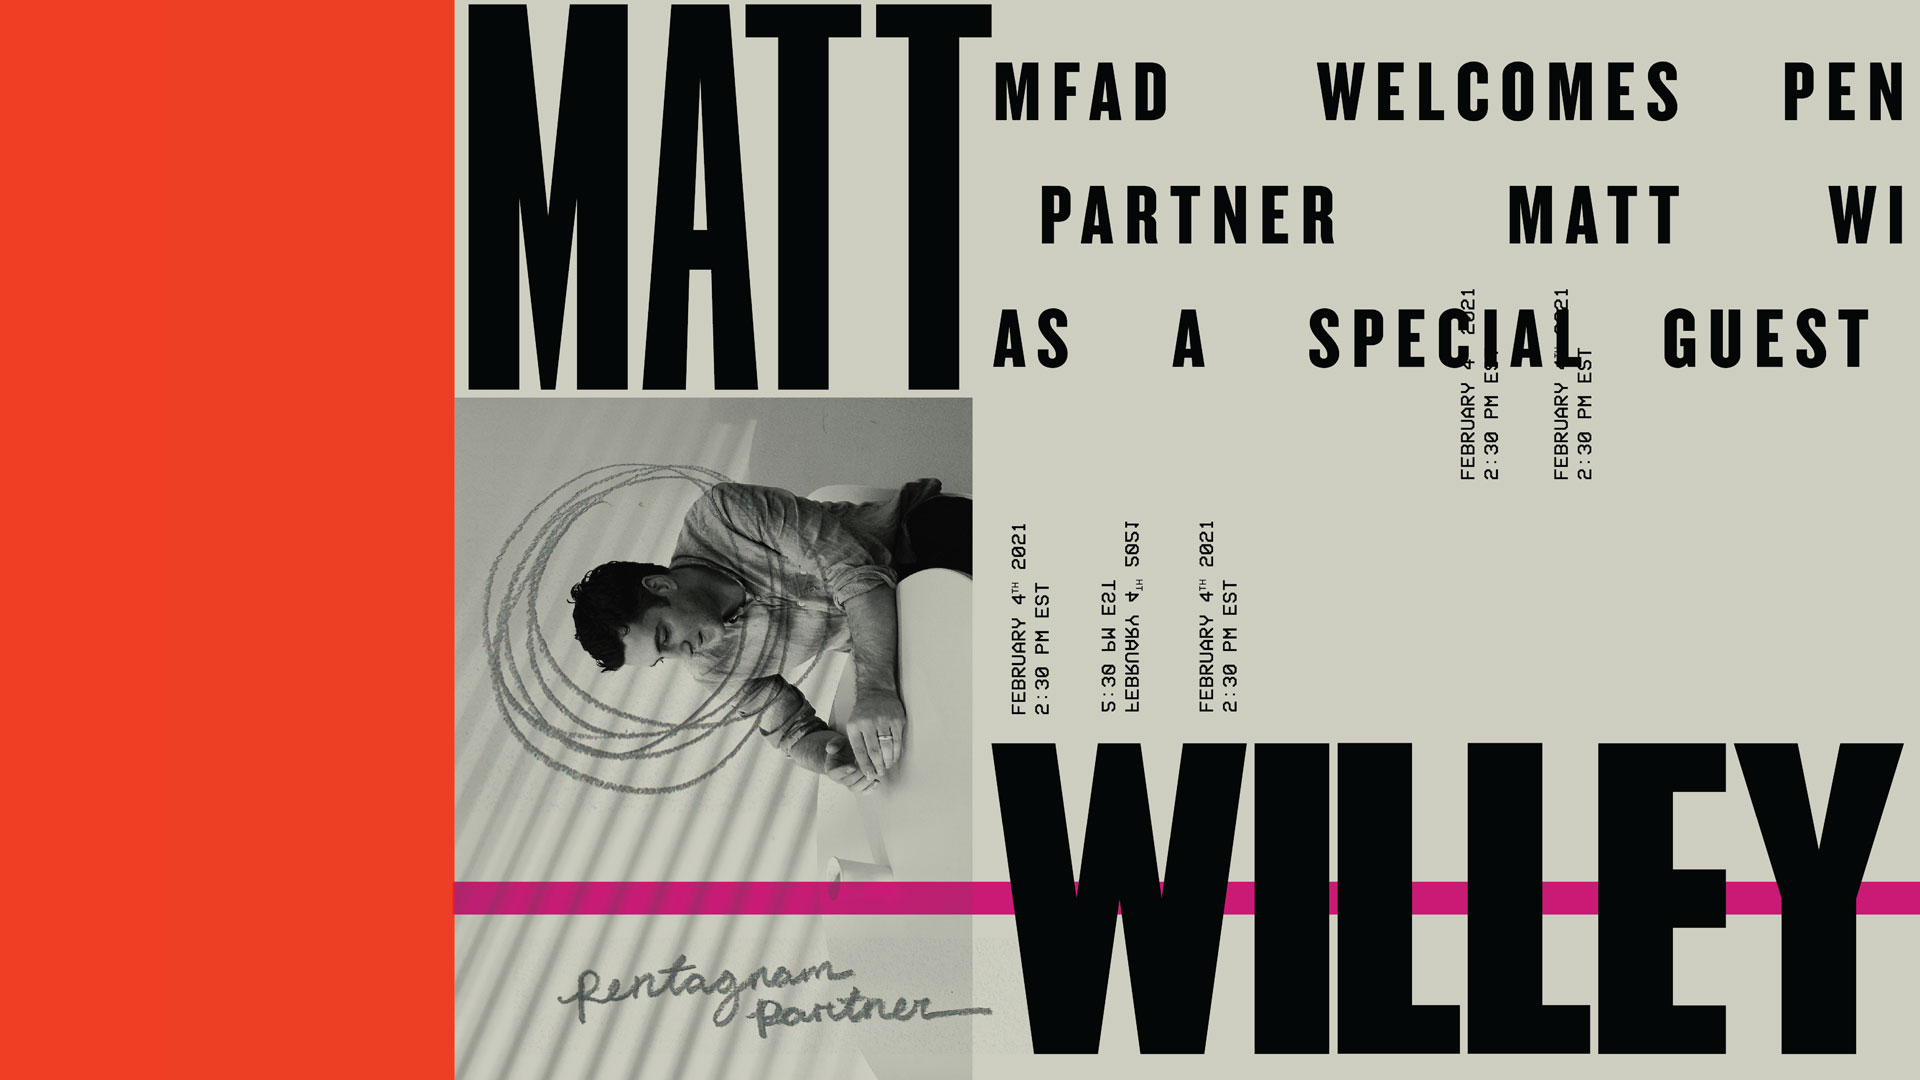 Matt Willey Poster by Julia Hummel